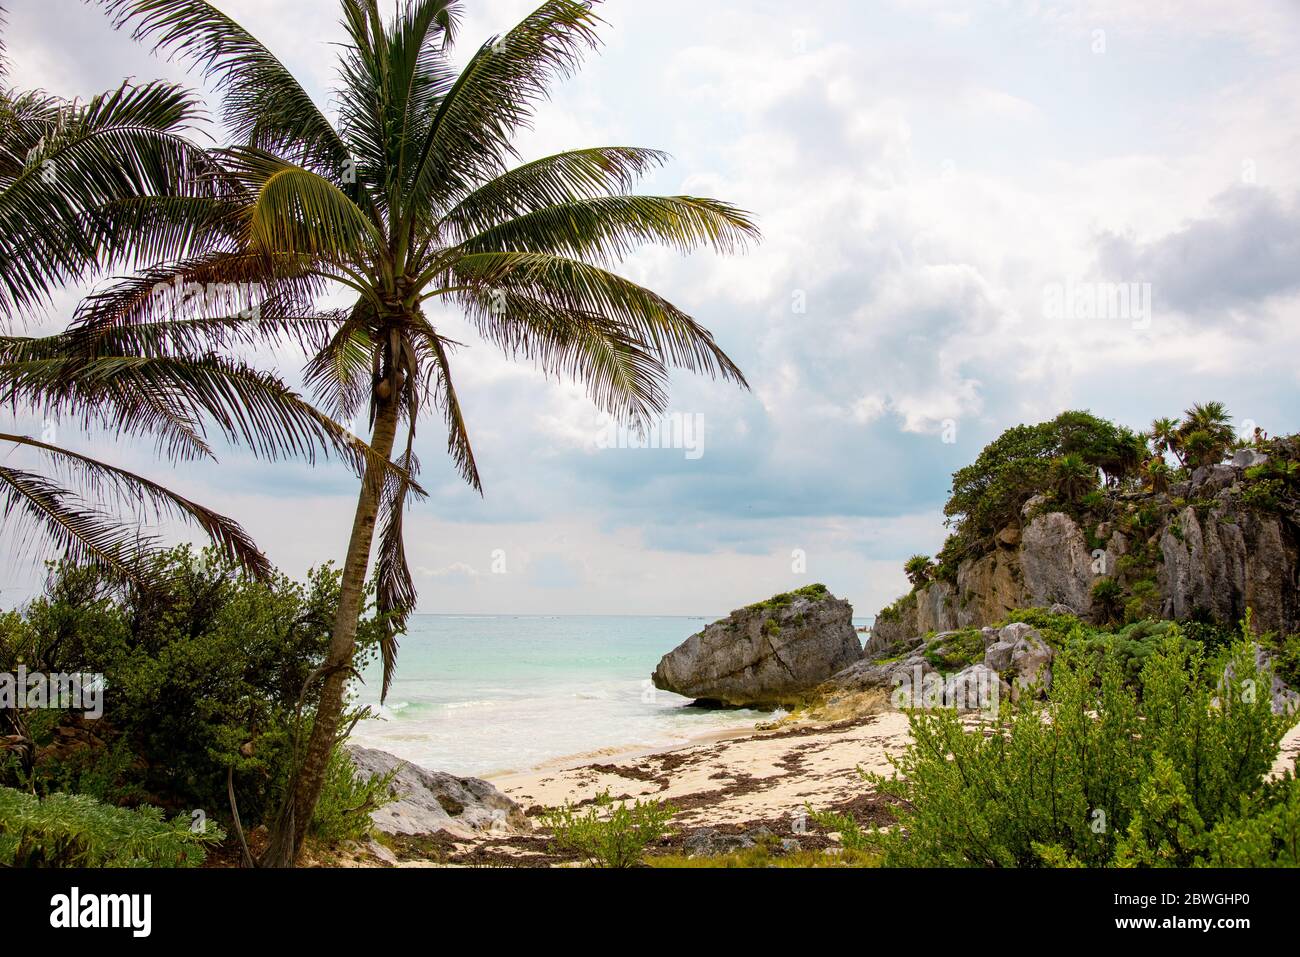 Kristallklares türkisfarbenes Wasser an einem mexikanischen Sandstrand unter Palmen - Touristenattraktion und Urlaubsziel in Tulum, Mexiko, Karibik Stockfoto